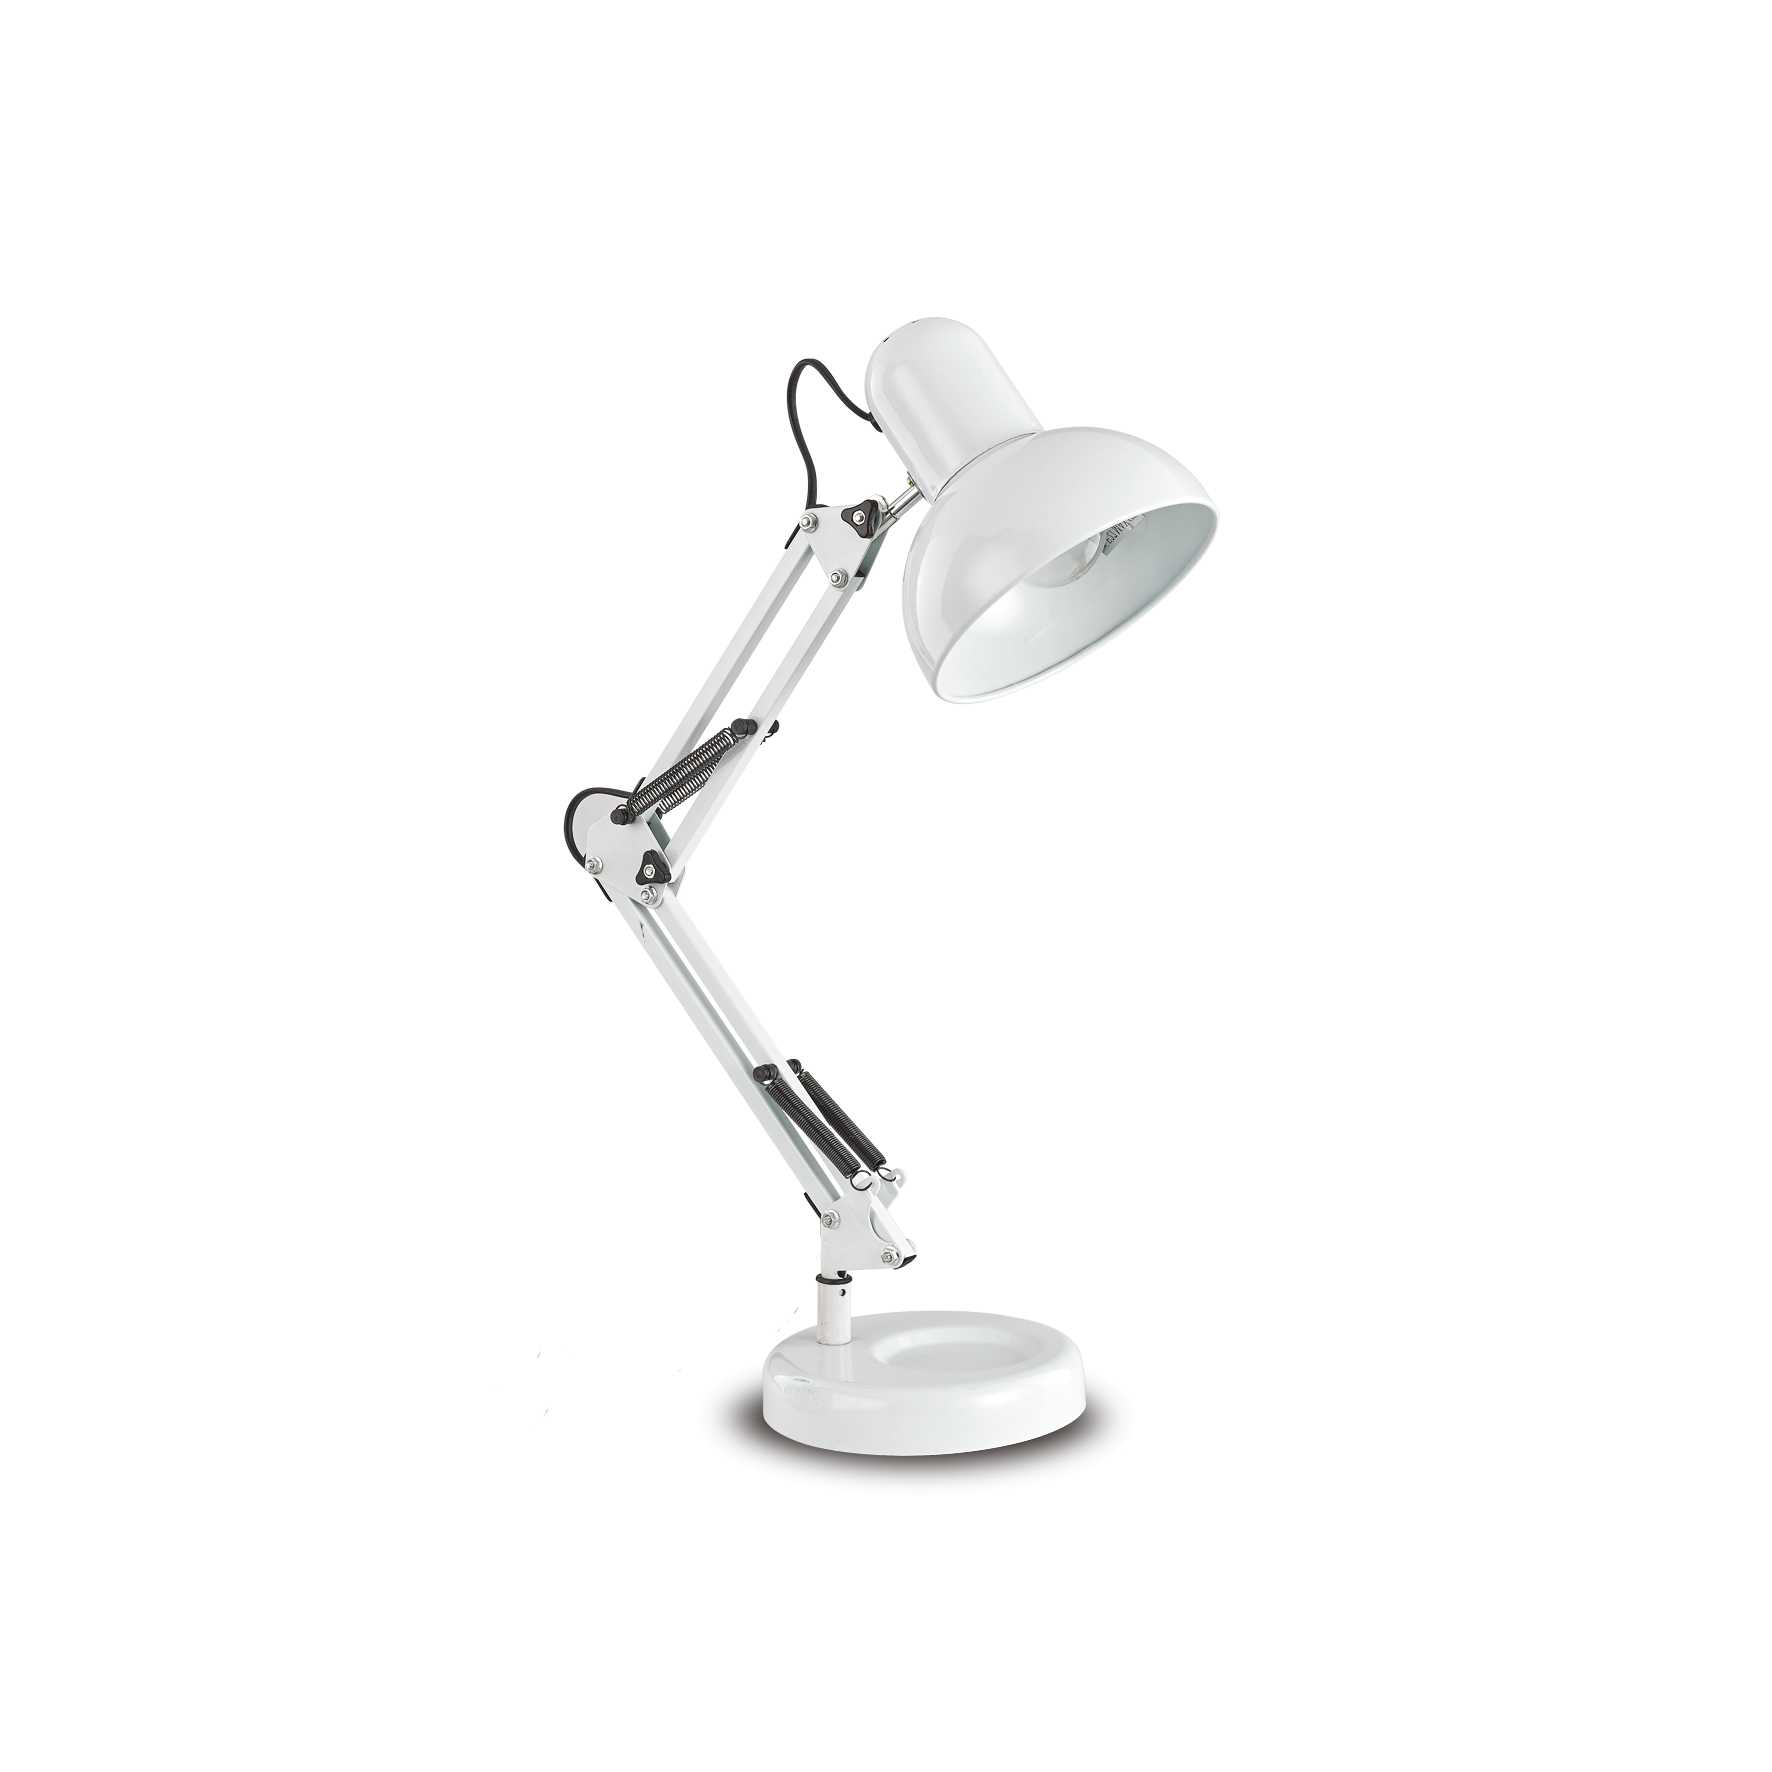 AD hotelska oprema Stolna lampa Kelly tl1- Bijele boje slika proizvoda